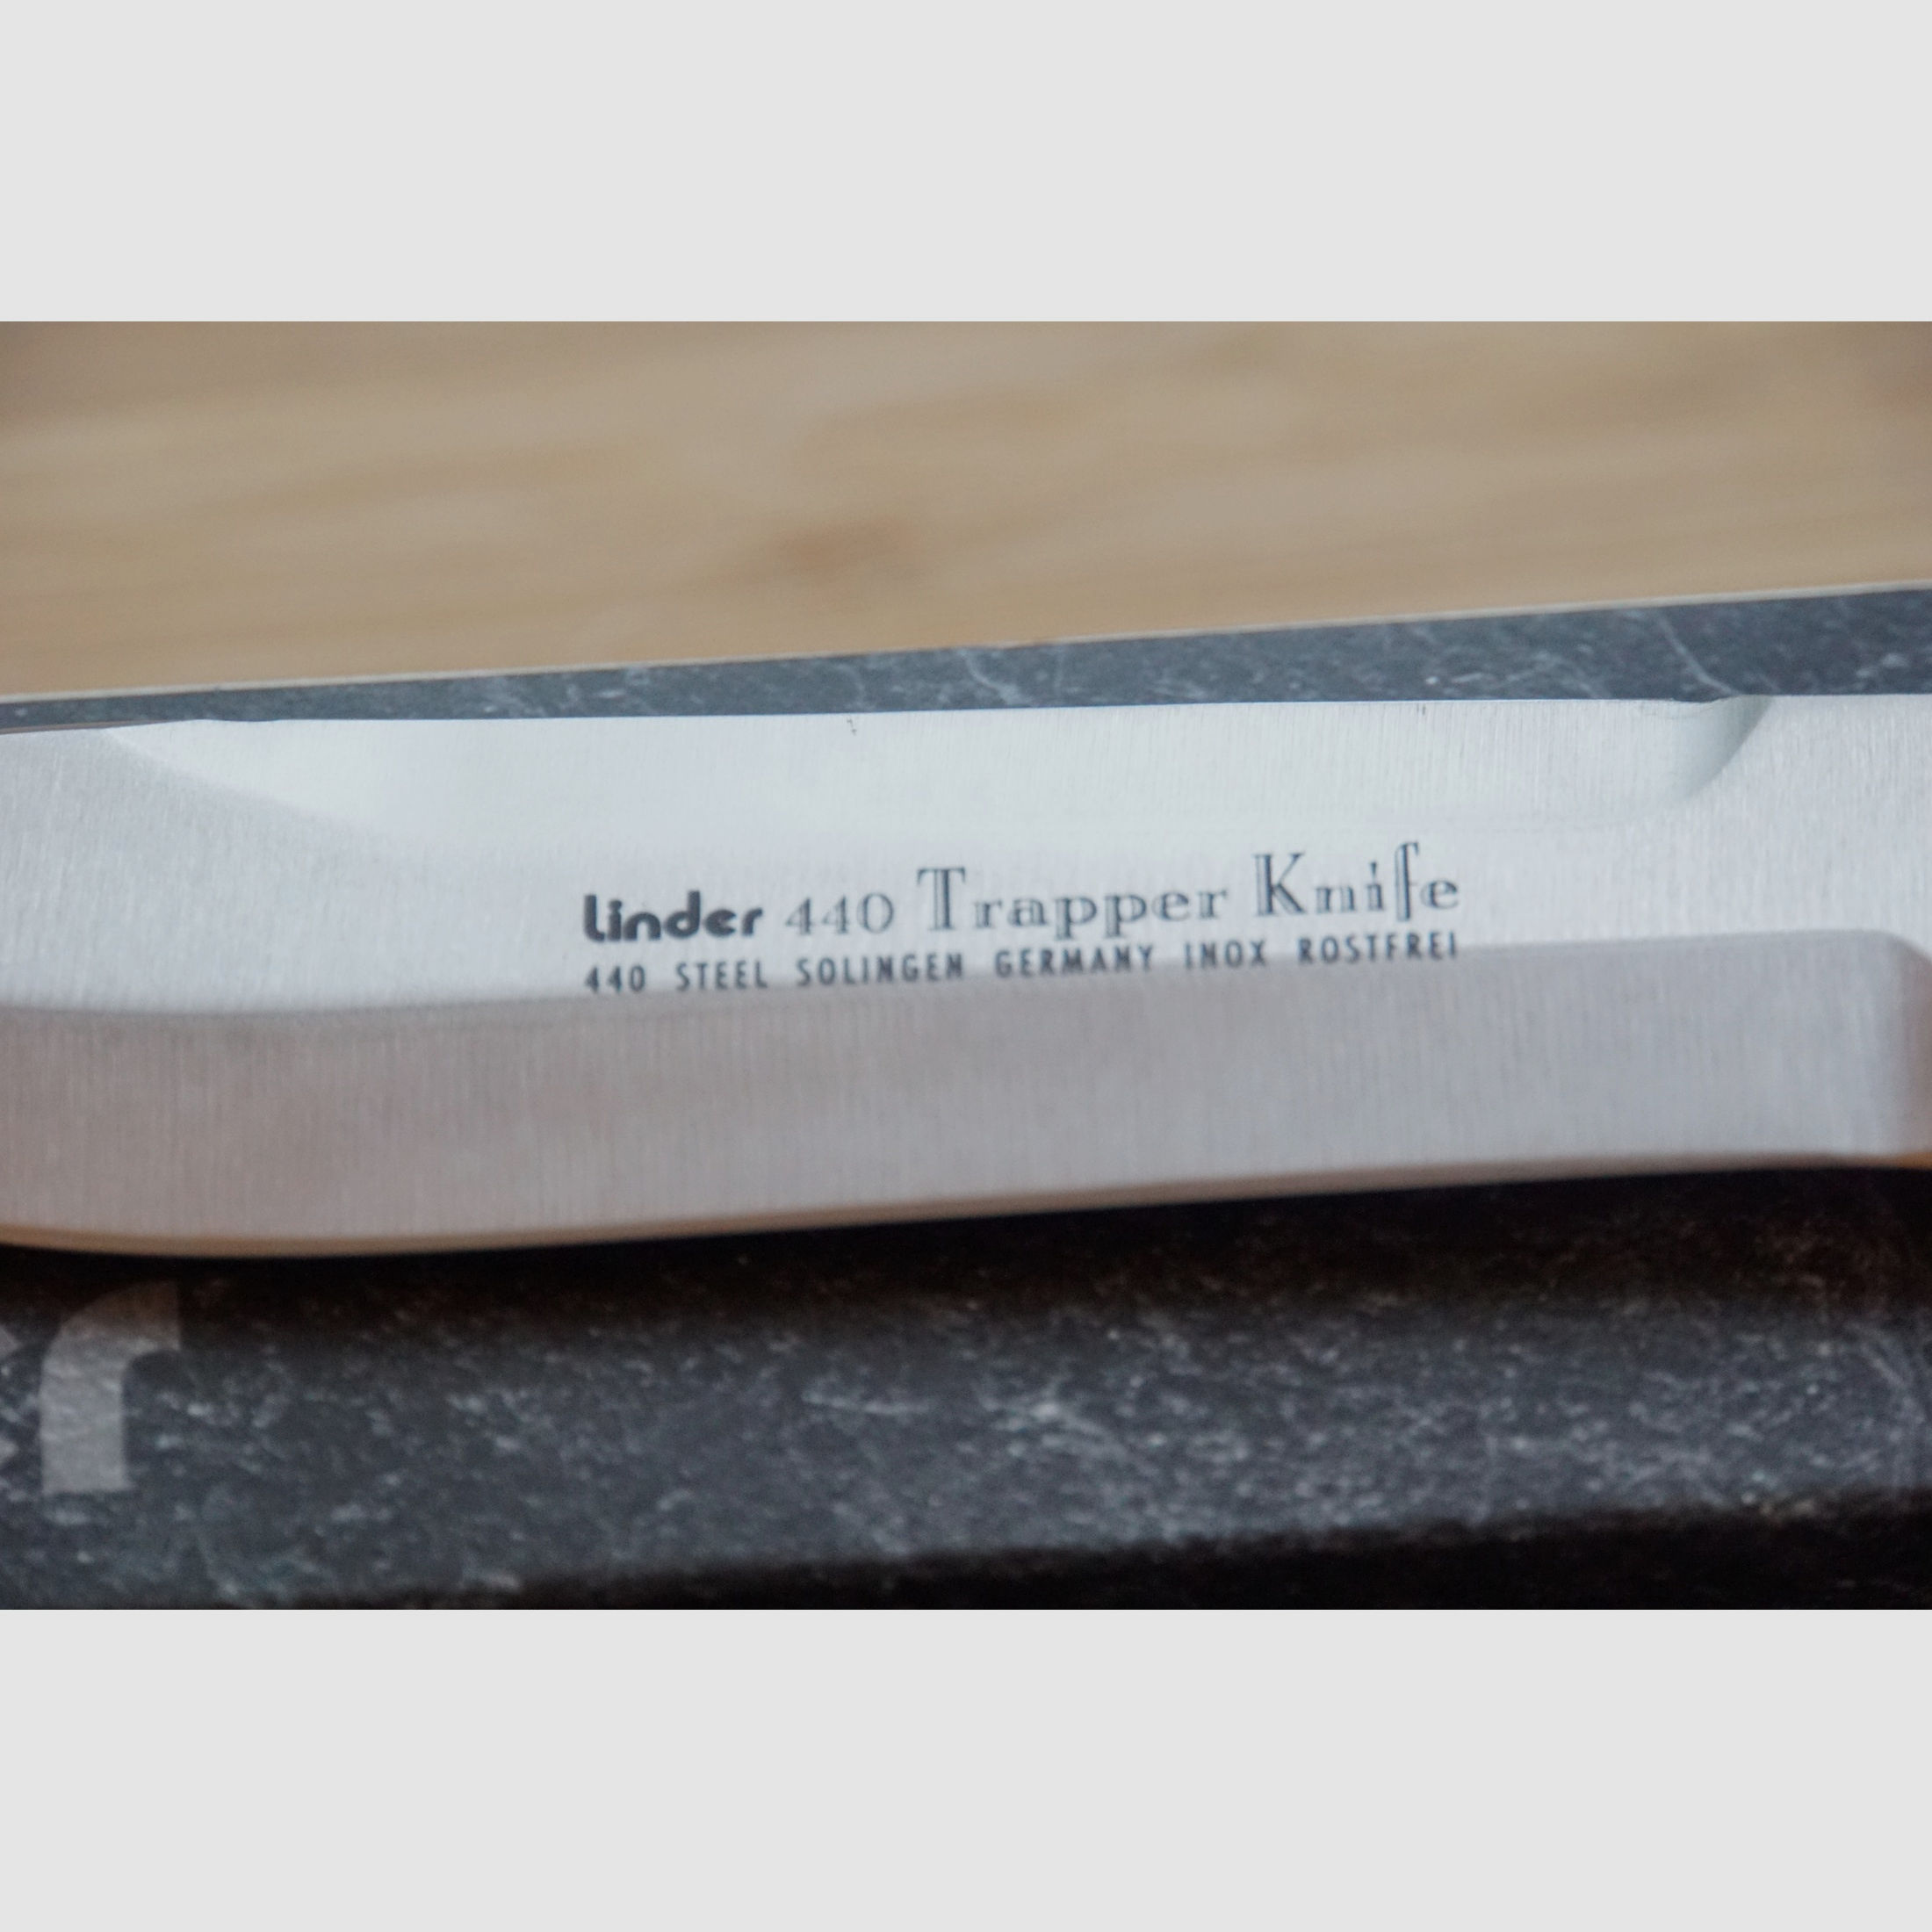 Linder 440 Trapper Knife